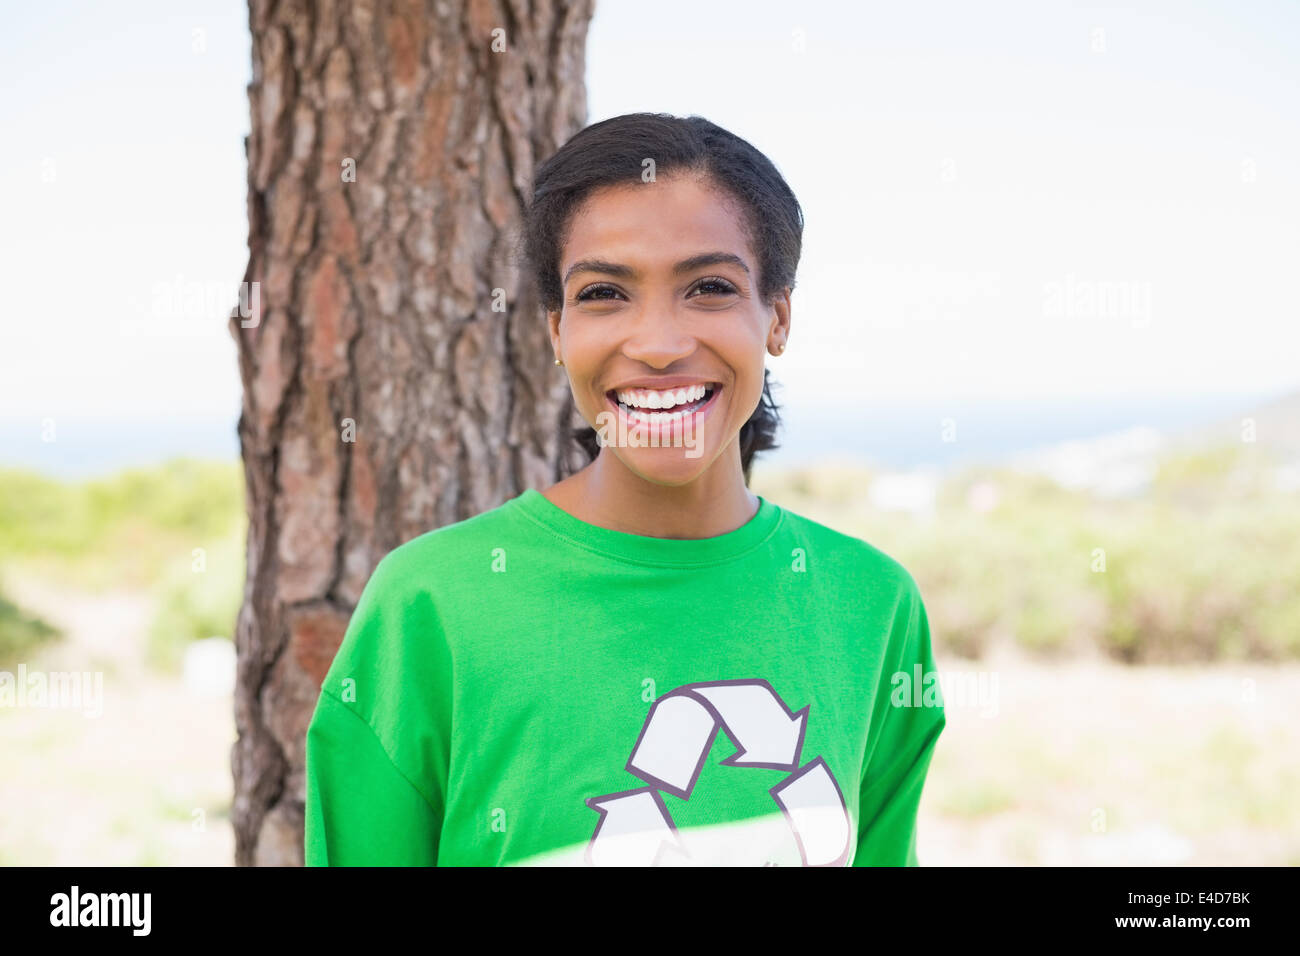 Pretty environmental activist smiling at camera Stock Photo